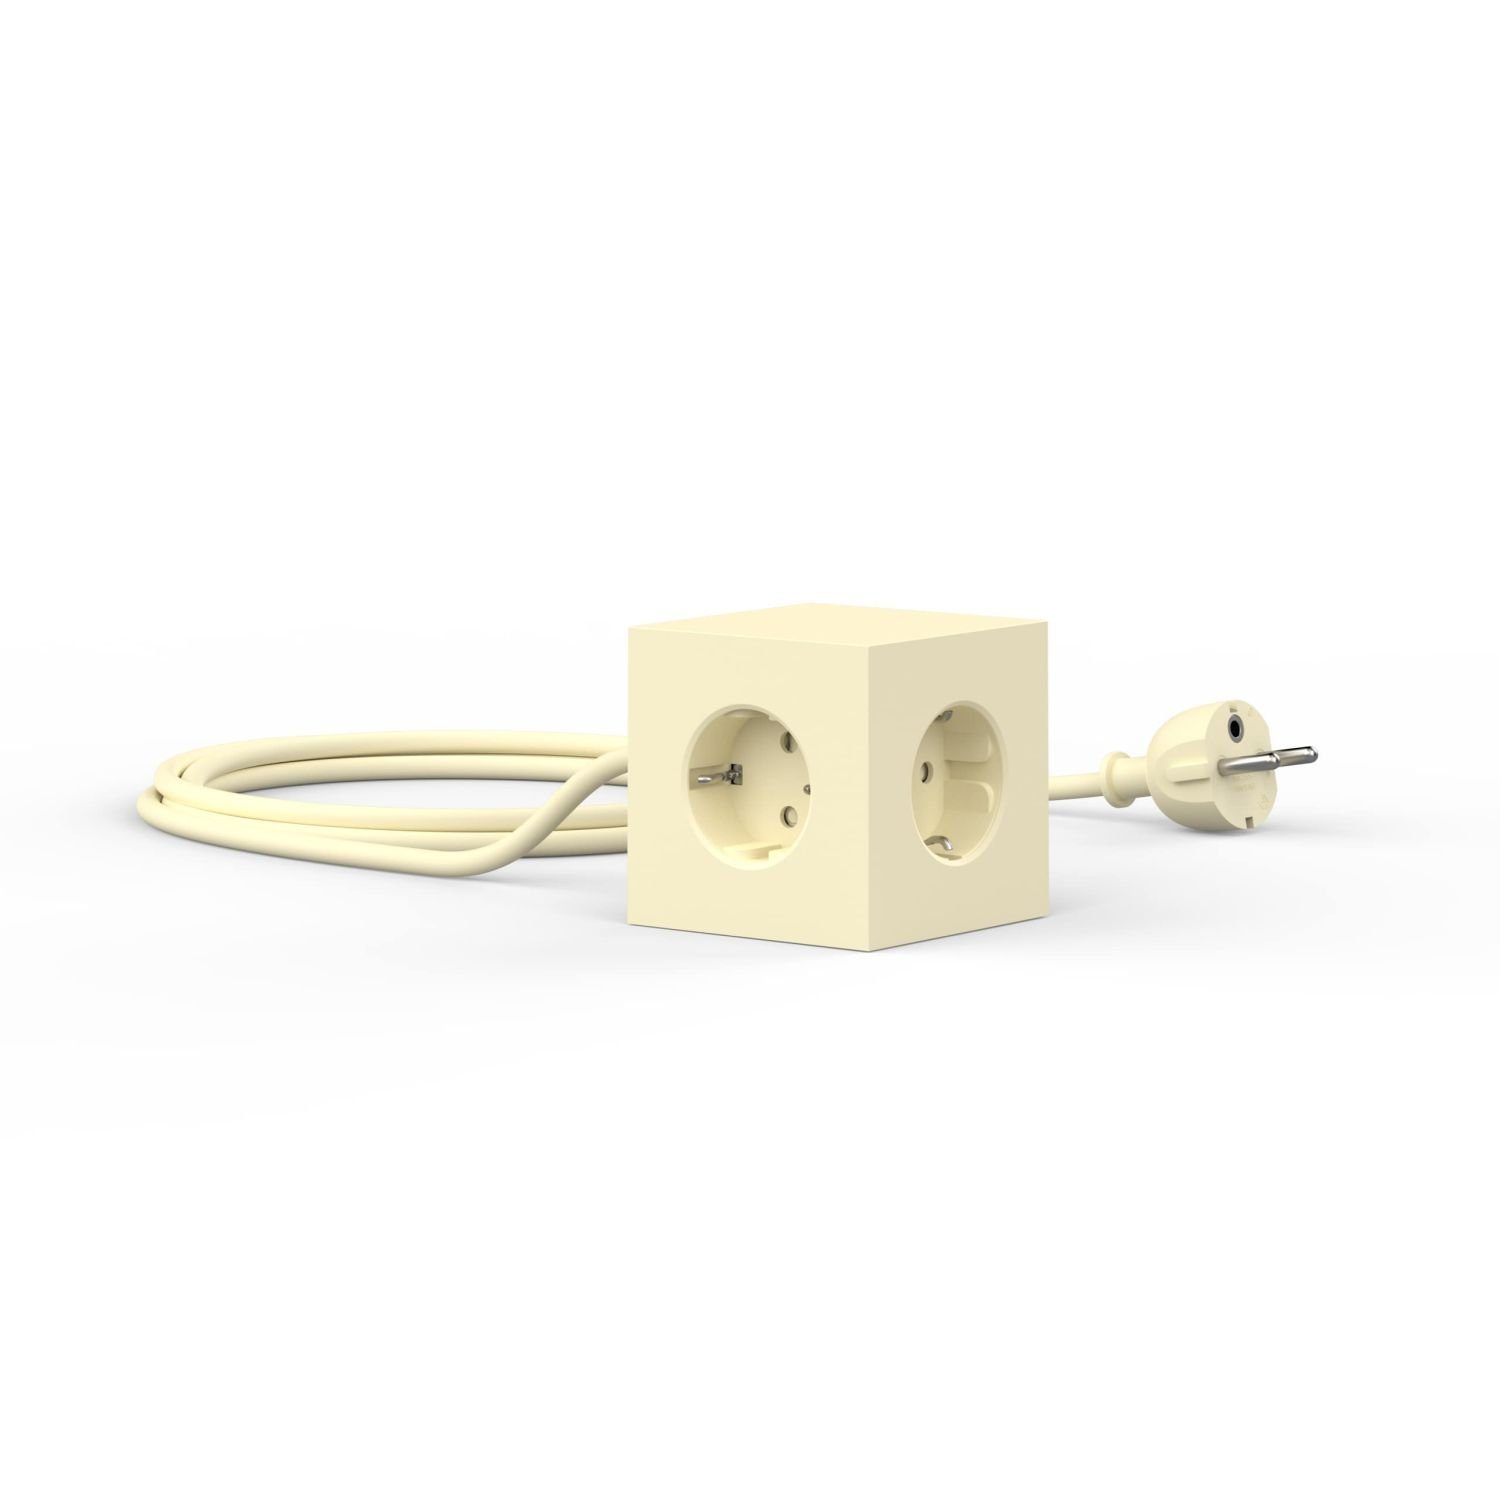 AVOLT Square 1 USB & Magnet Ice Yellow Mehrfachsteckdose 3-fach (USB-Anschlüsse, Kabellänge 1,8 m) | Merhfachsteckersysteme